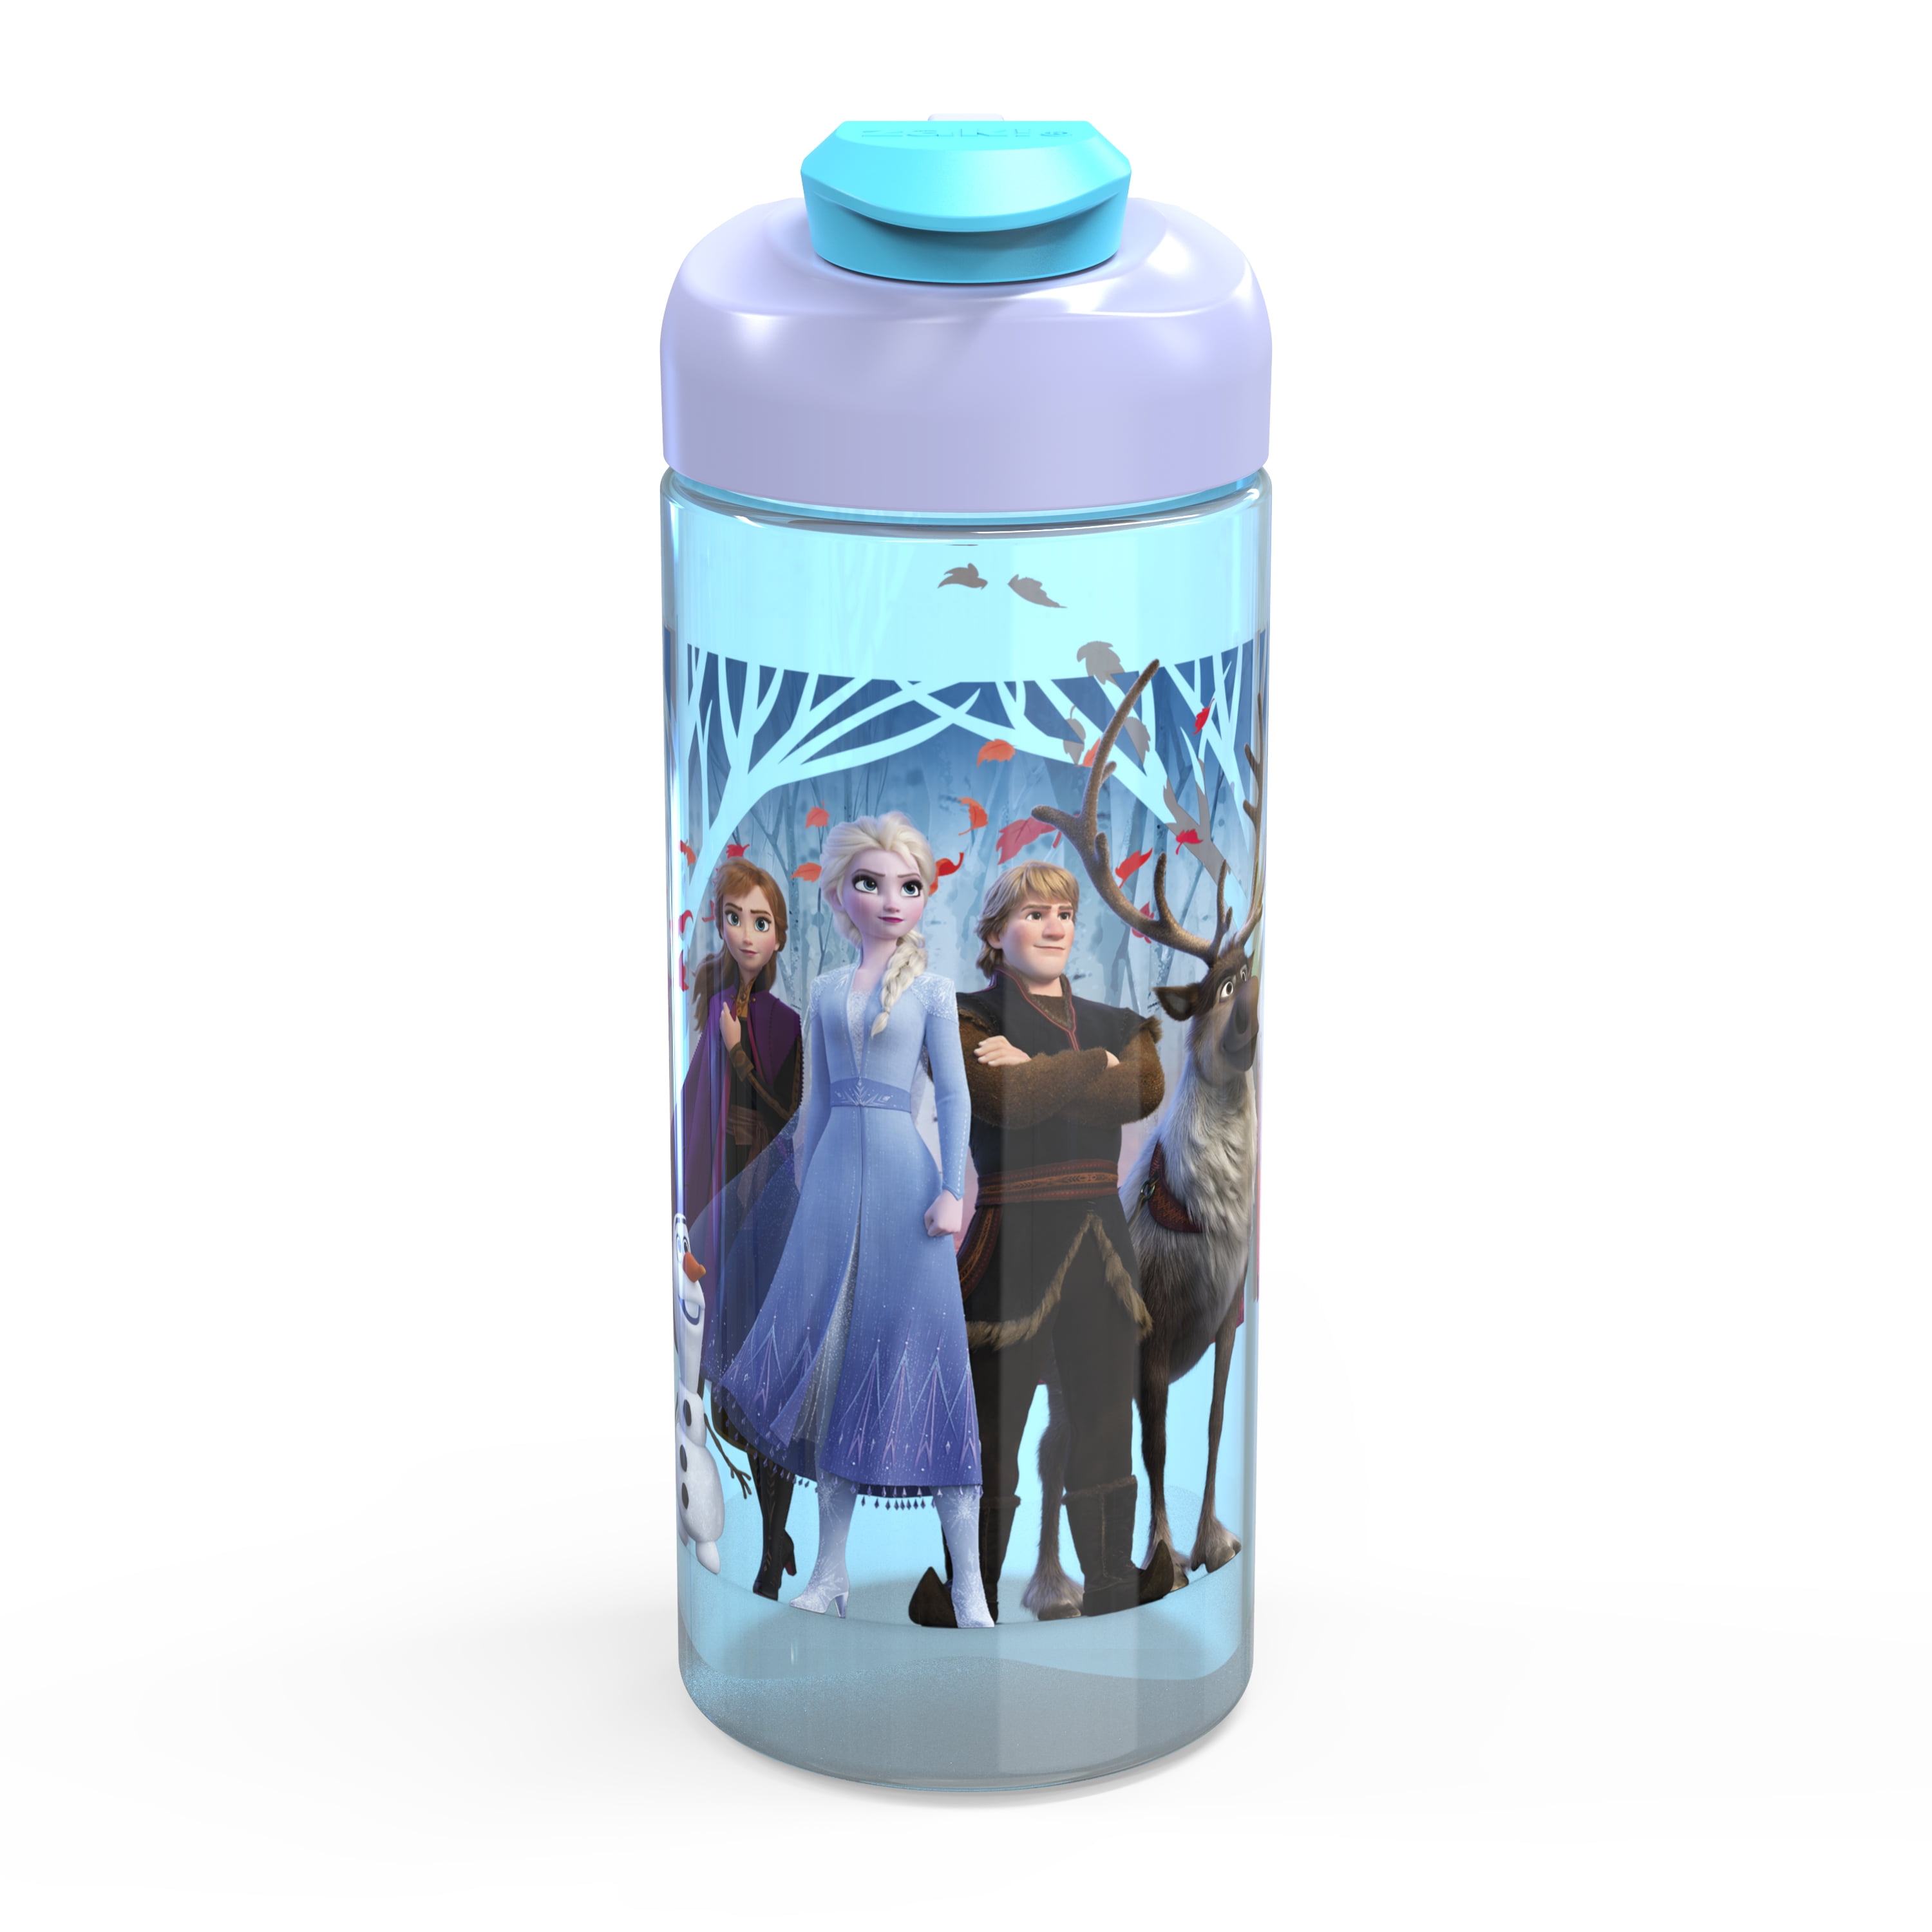 Disney Store Frozen Fever Elsa Anna Plastic Snack Drink Bottle BPA Free New 